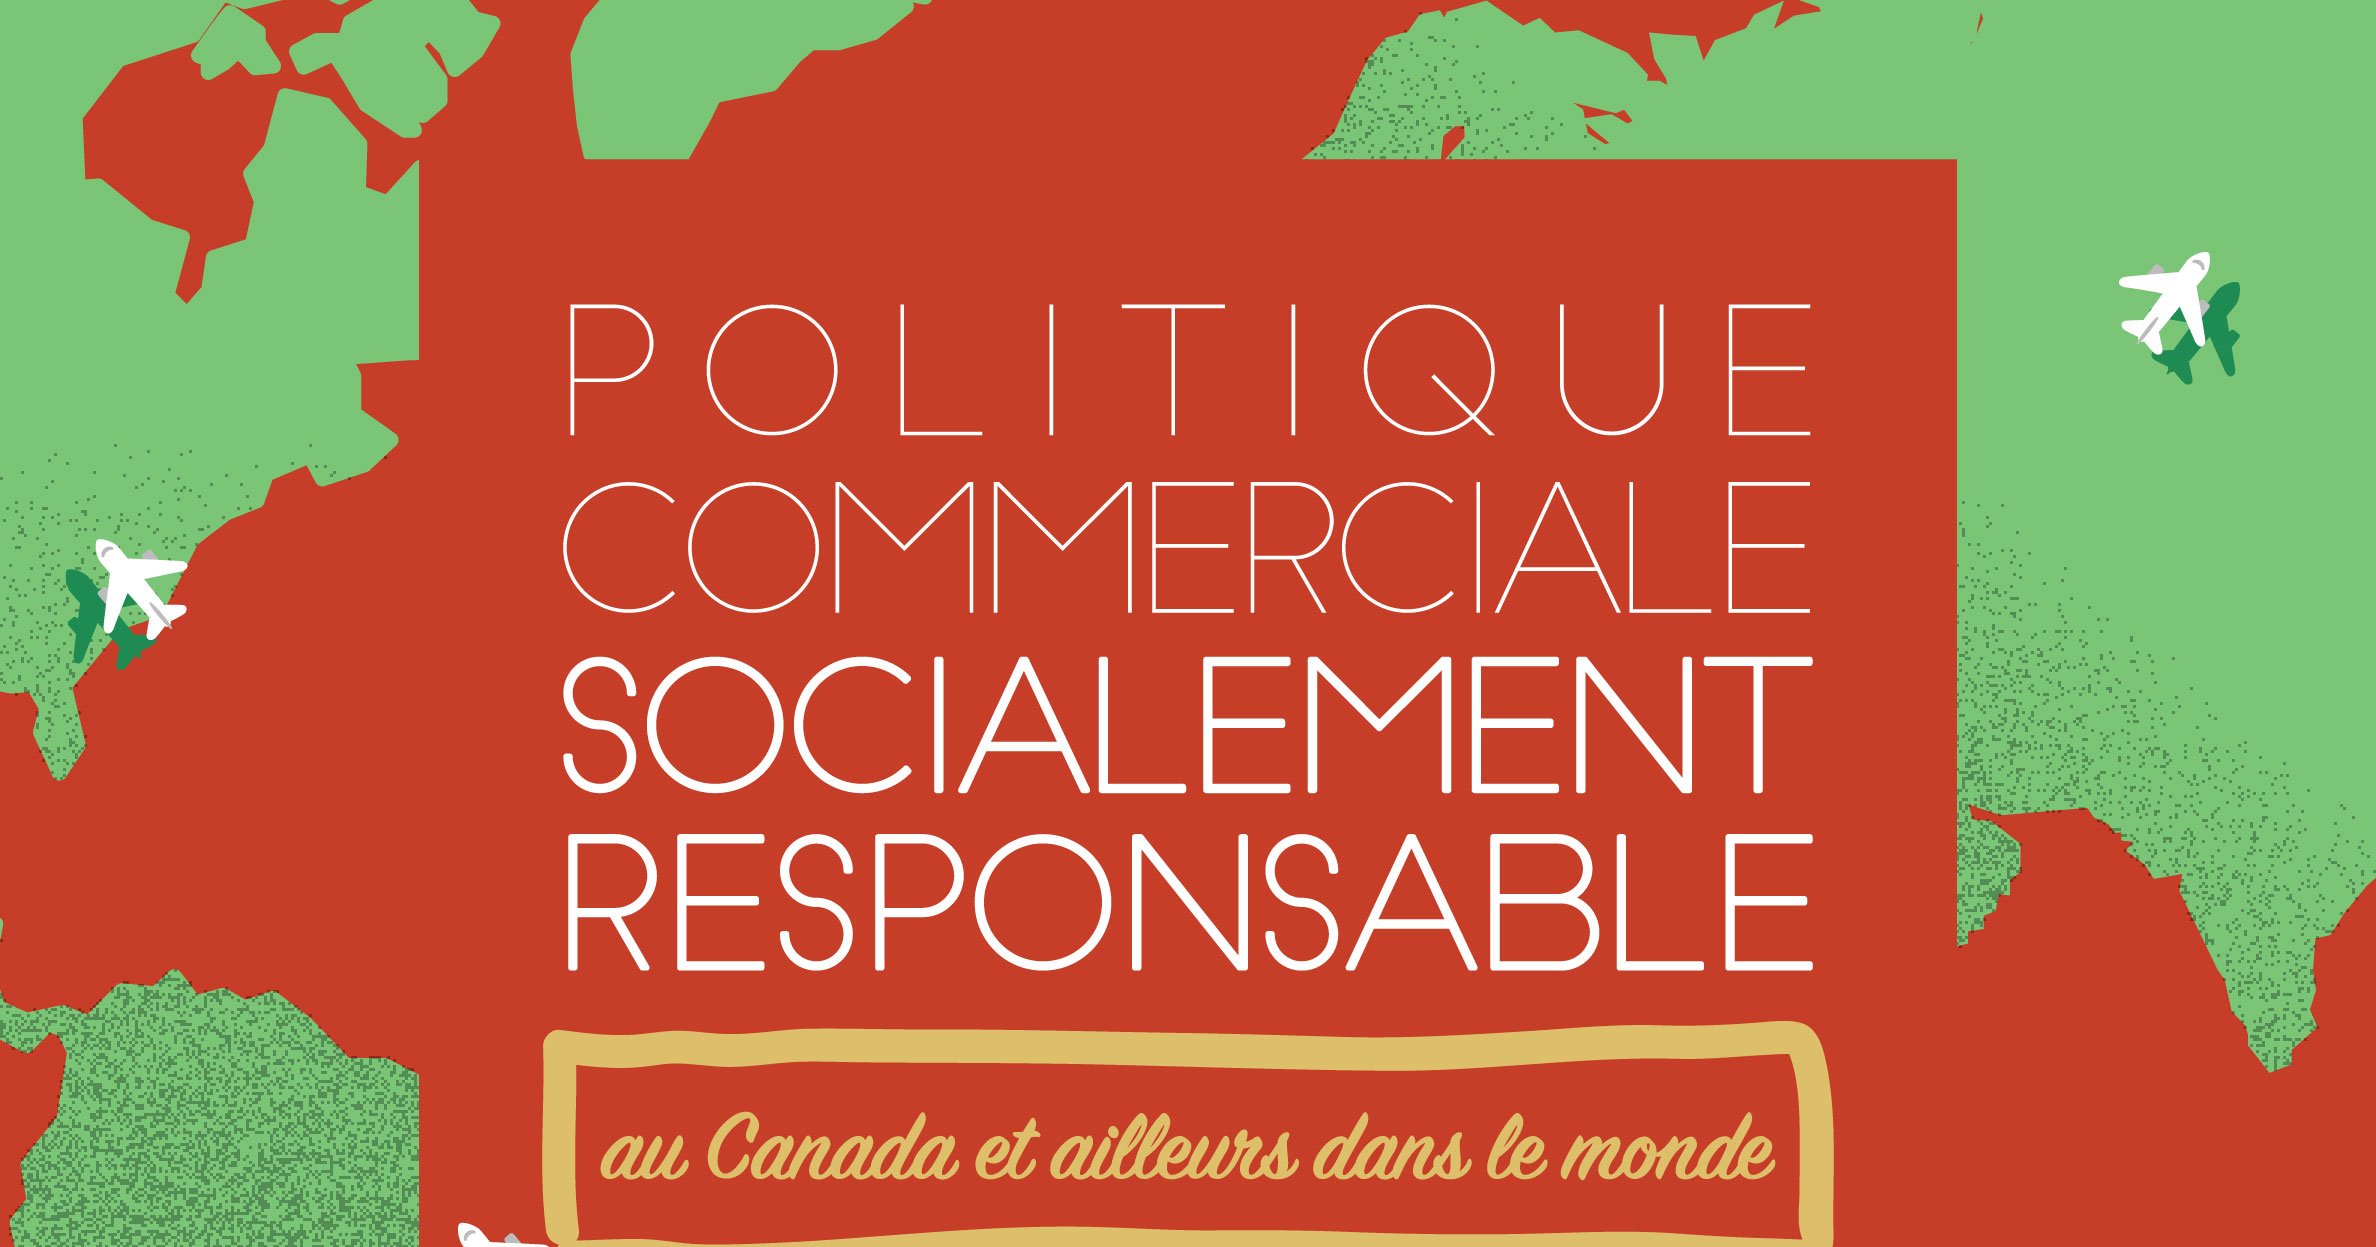 Politique commerciale socialement responsable - au Canada et ailleurs dans le monde